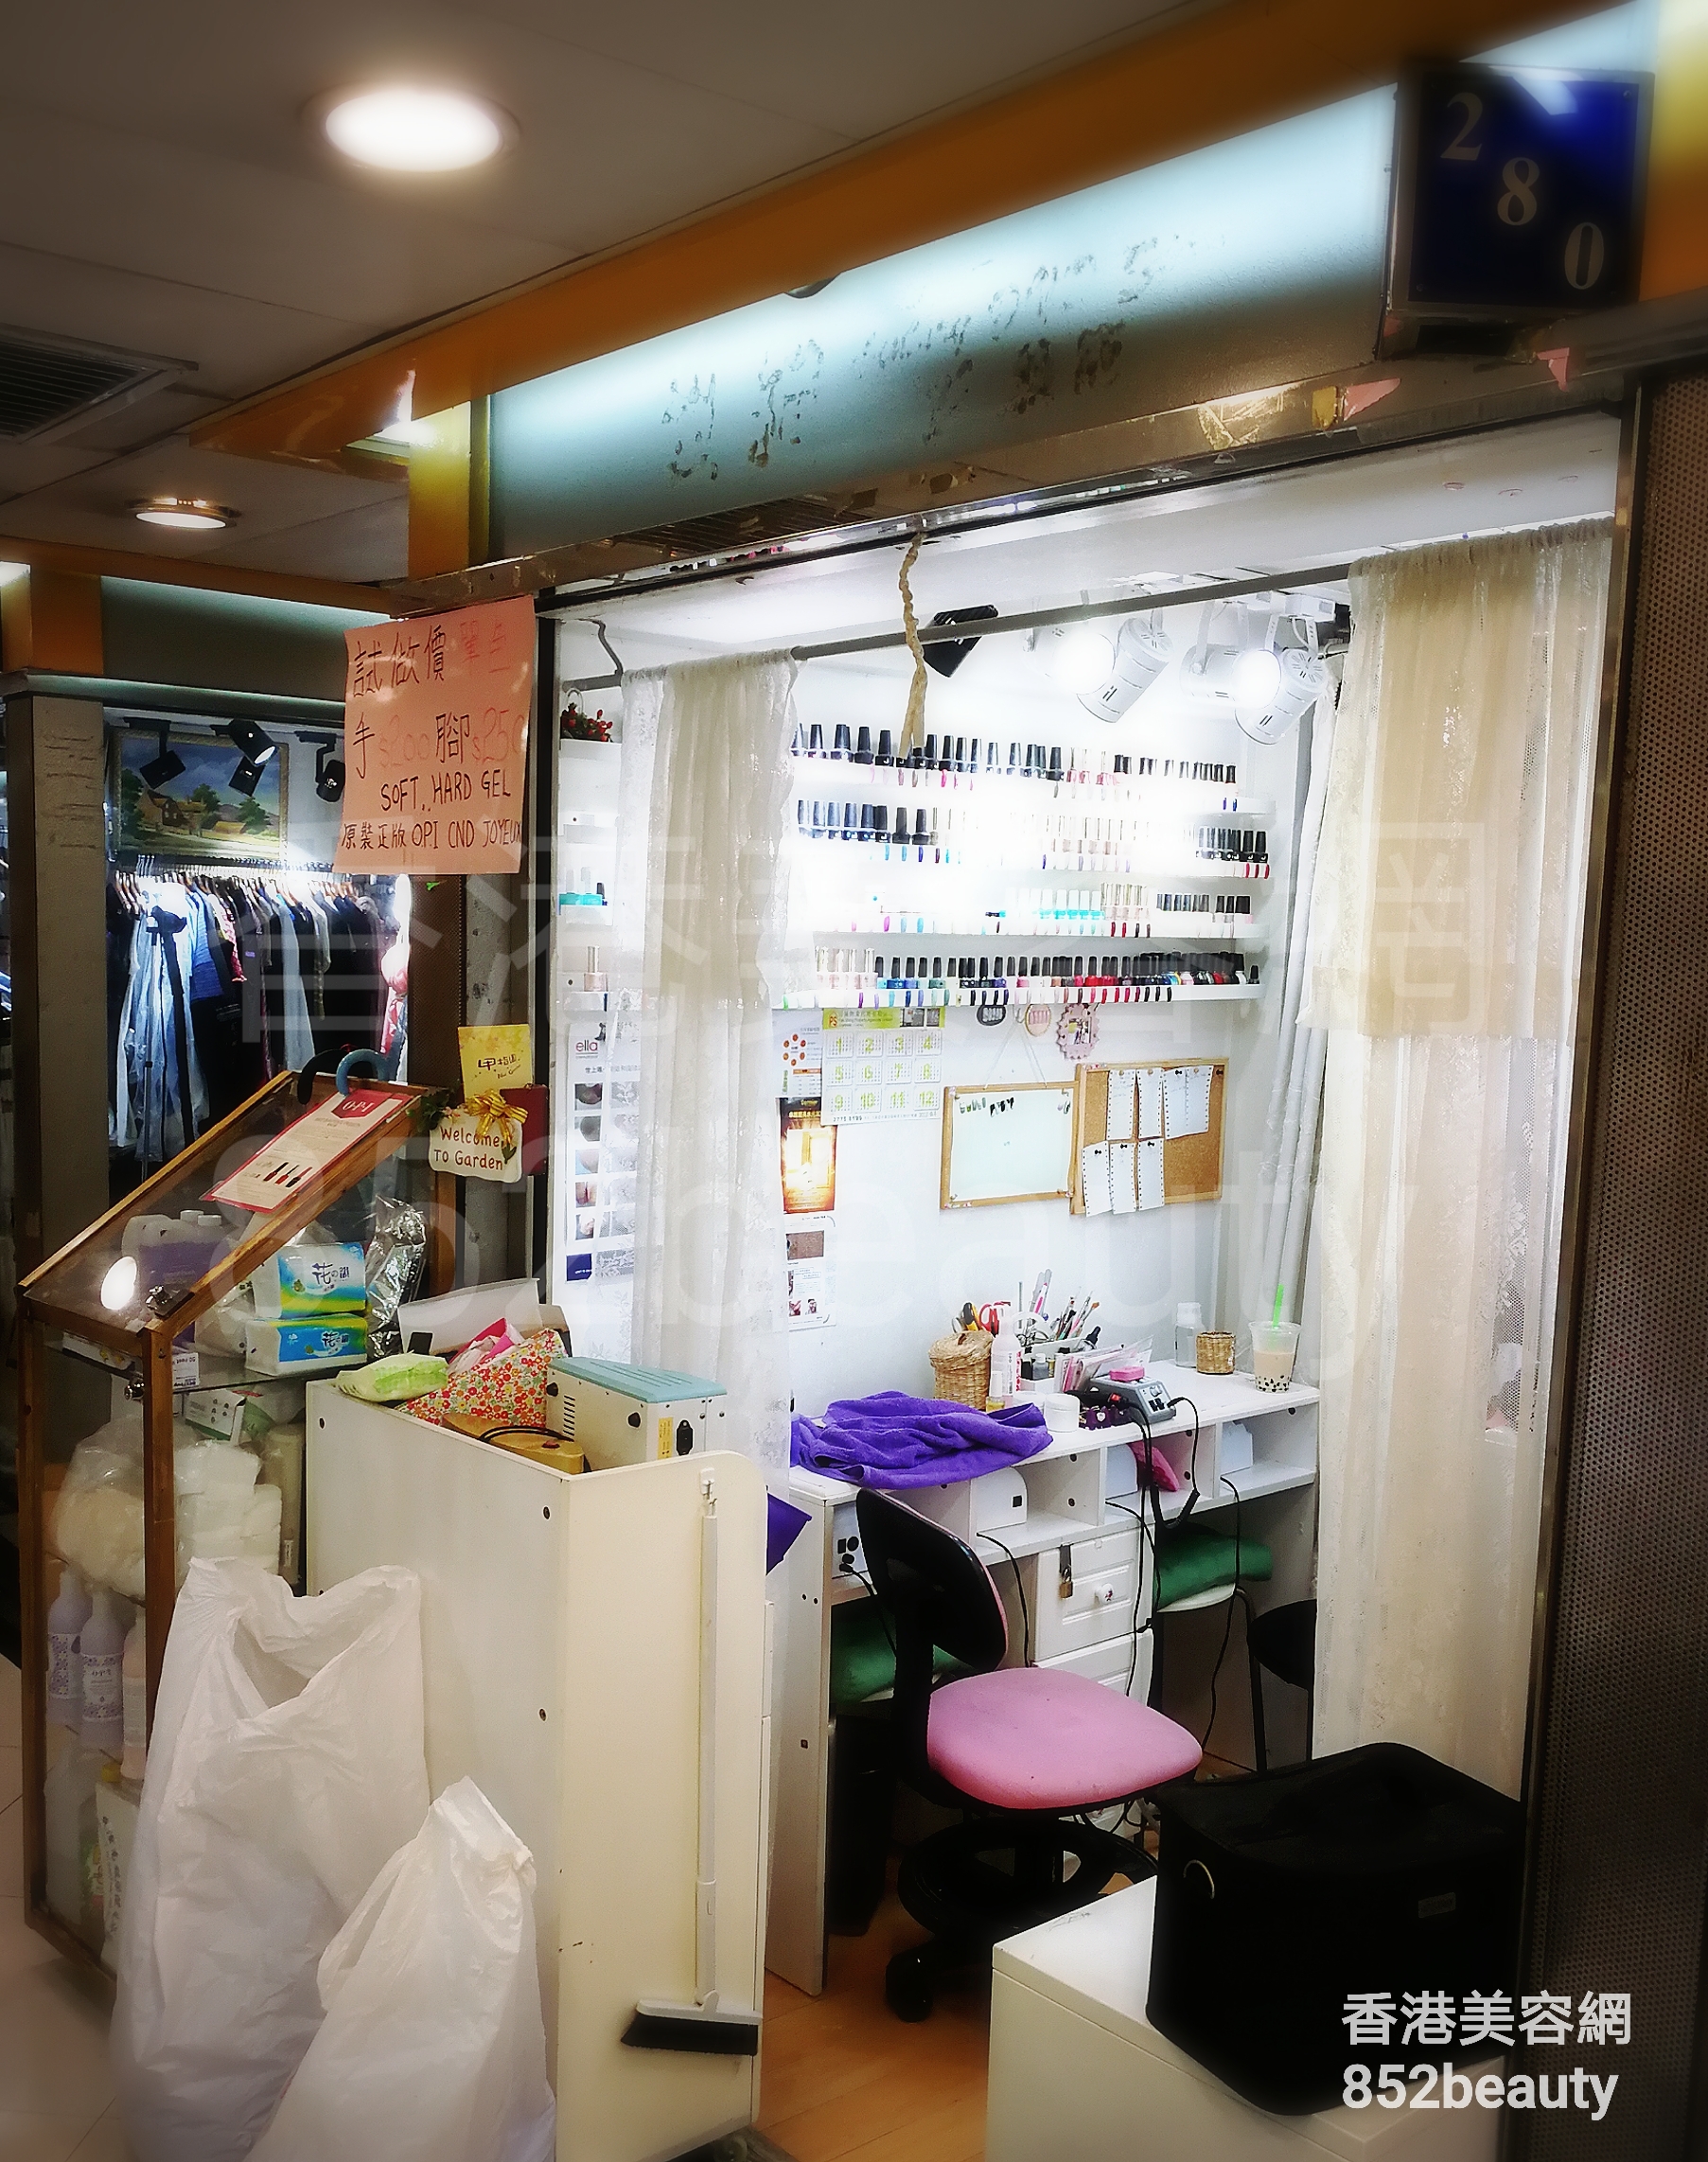 香港美容網 Hong Kong Beauty Salon 美容院 / 美容師: 甲指園 Nail Garden